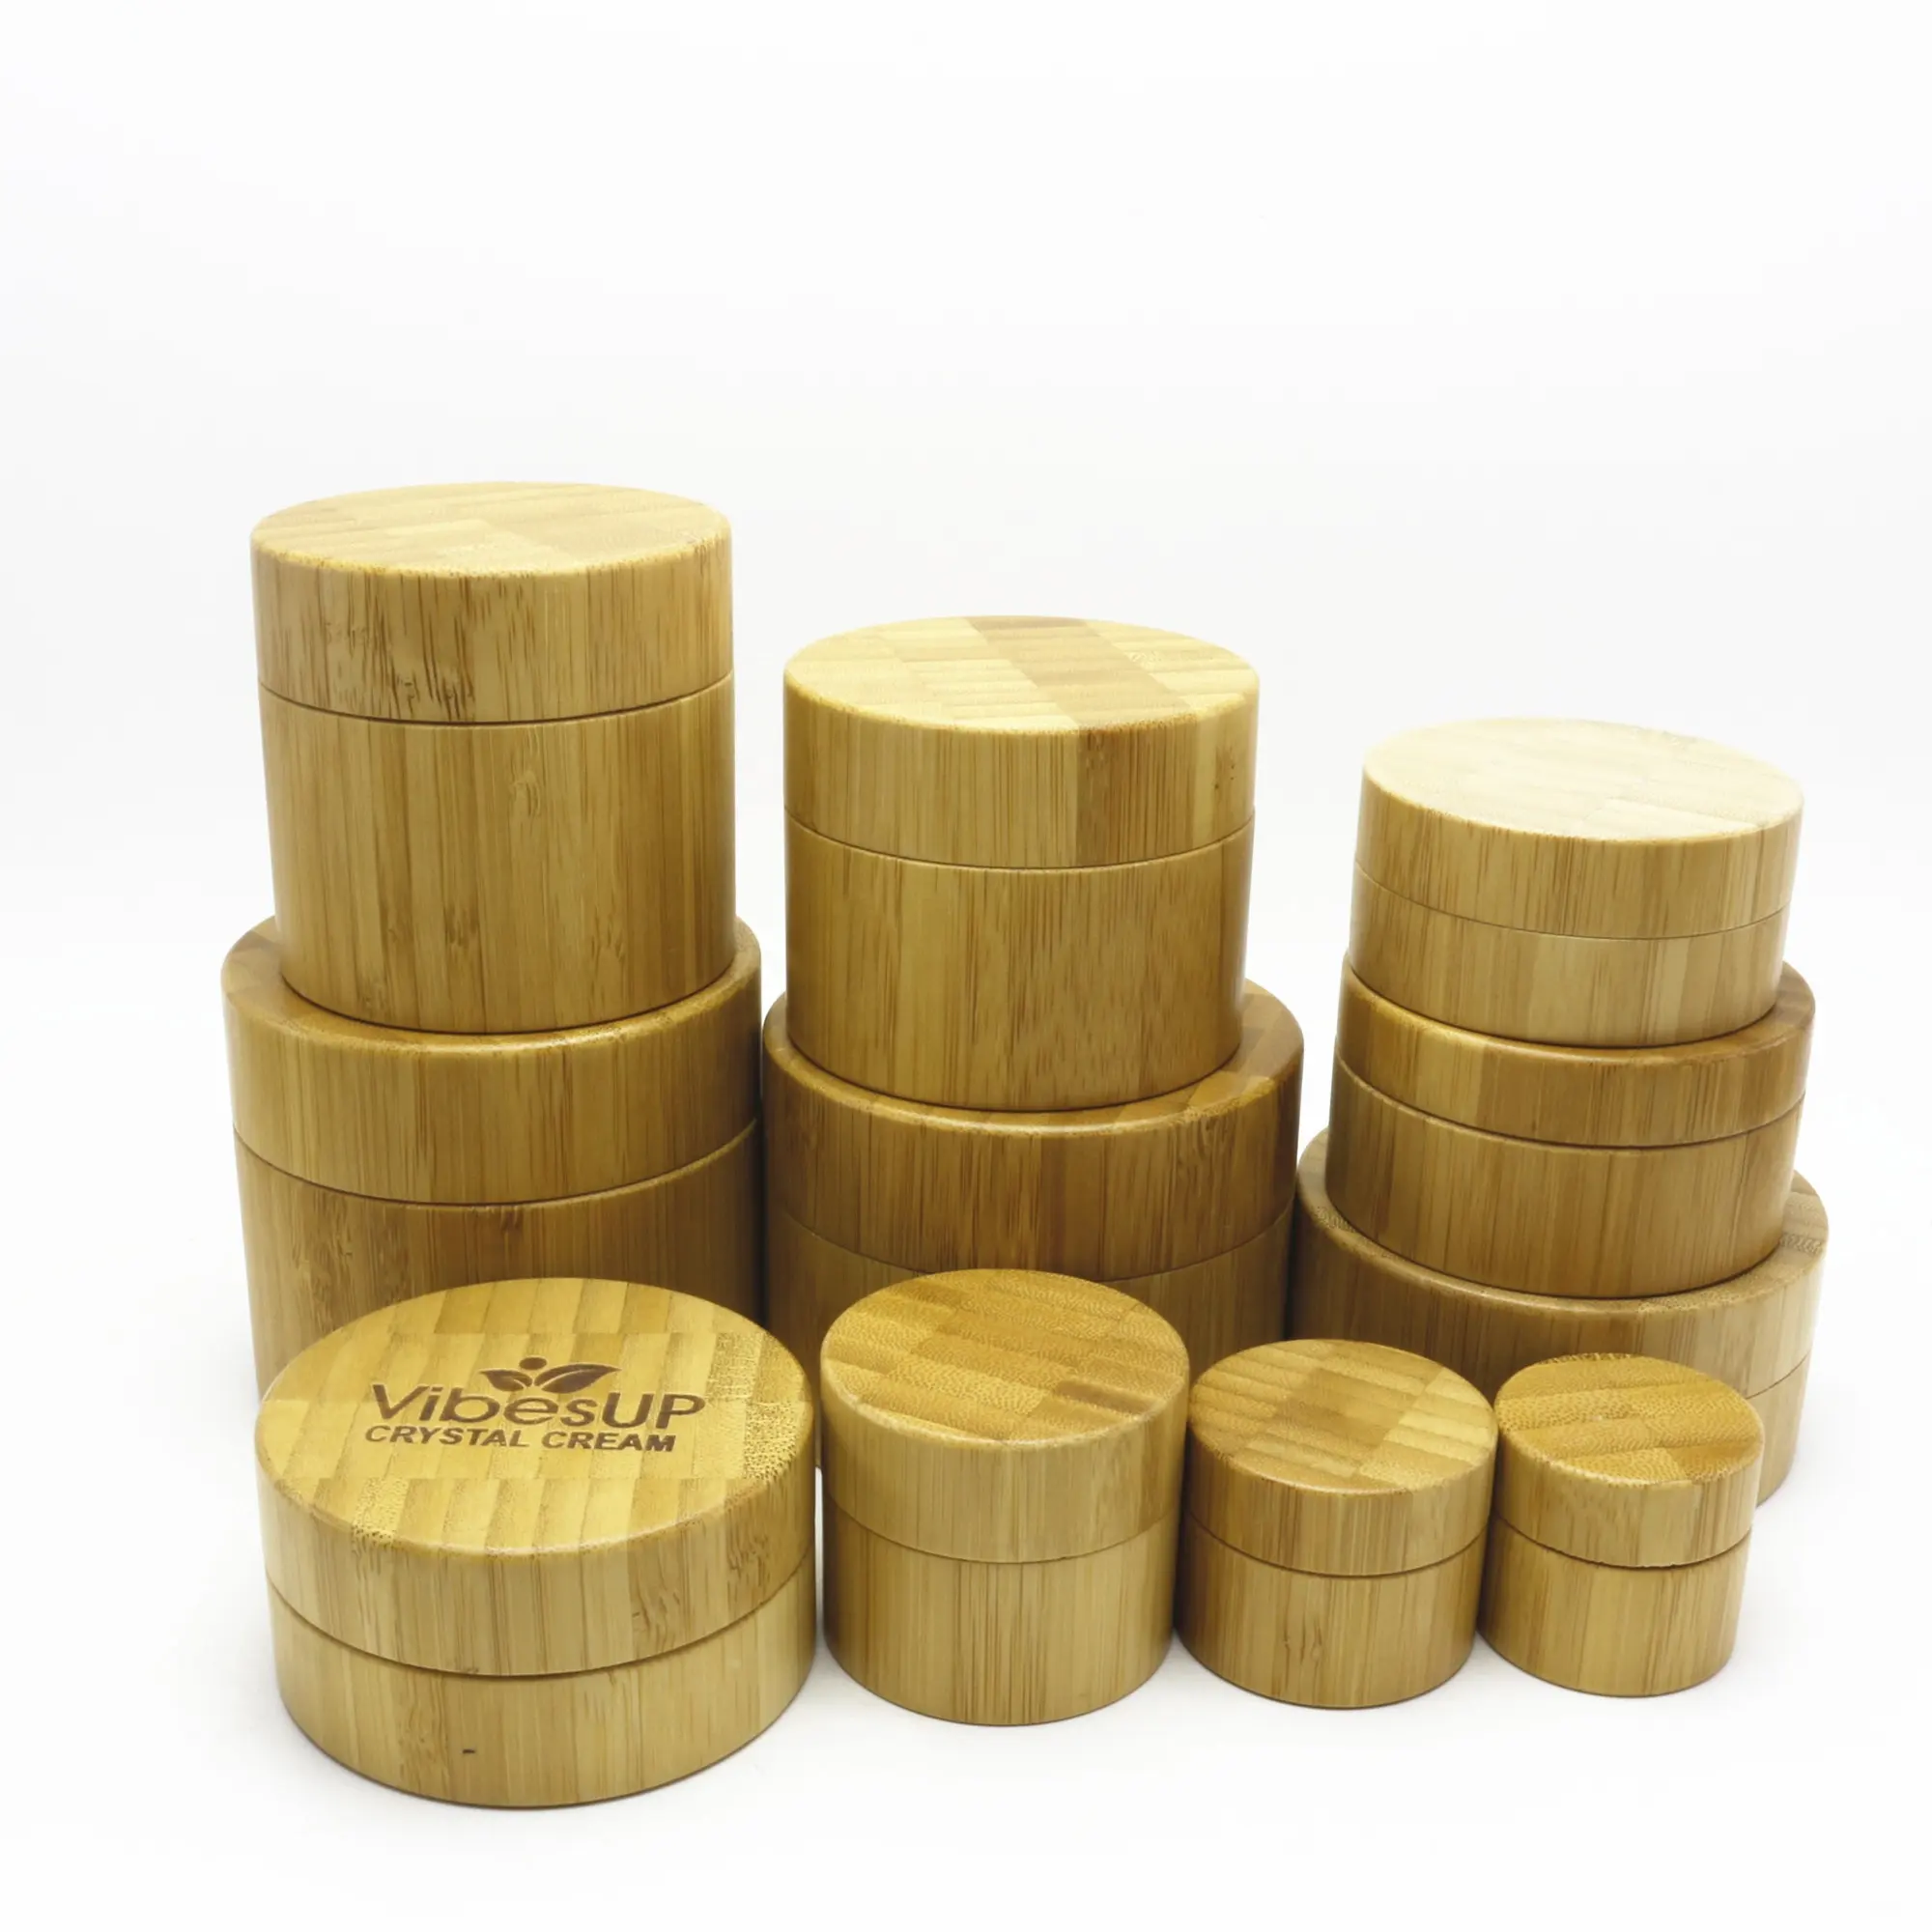 Хорошие косметические Бамбуковые банки и бутылки и деревянные ящики с бамбуковой крышкой, в которых используется BJ-888K для упаковки бамбукового сырья